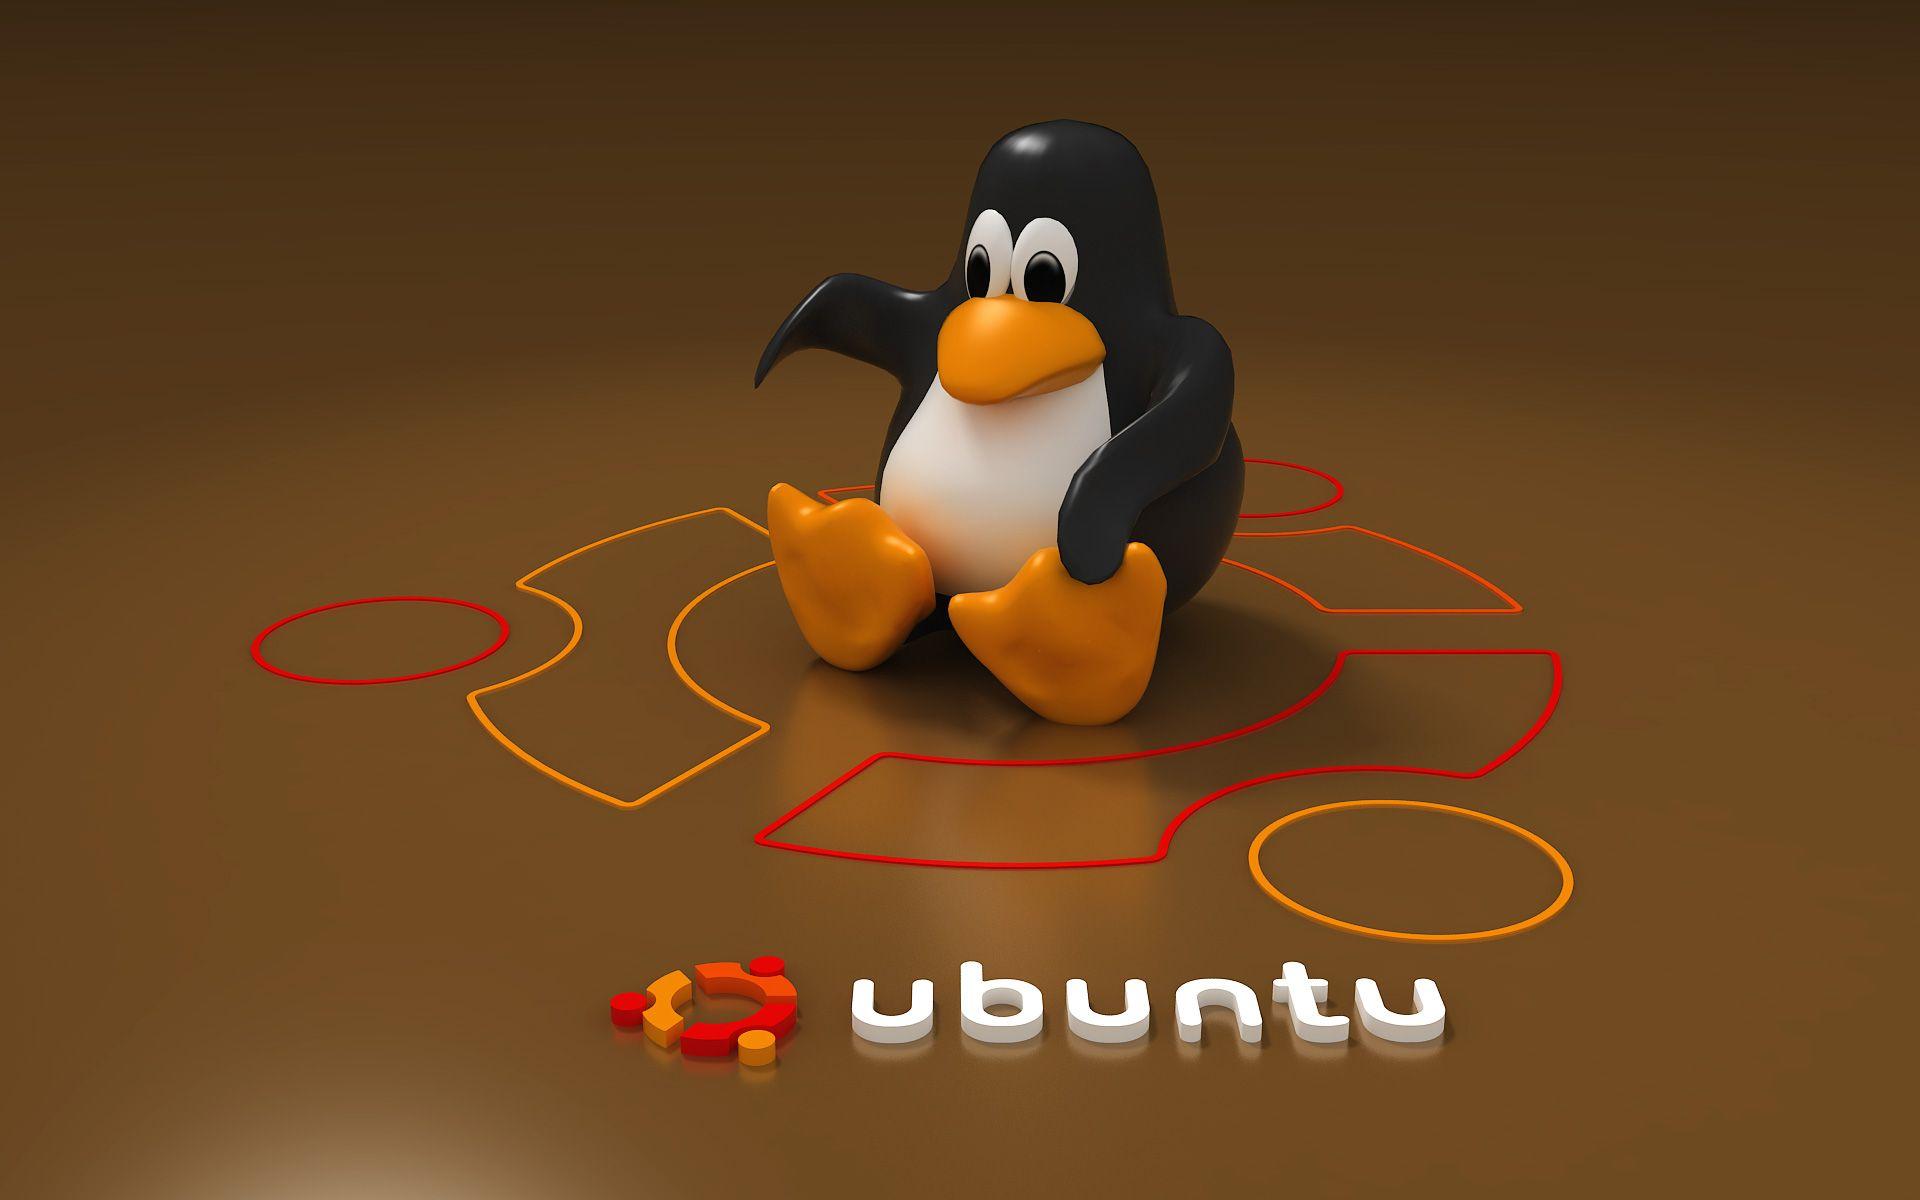 Linux Ubuntu Logo - Ubuntu - Linux